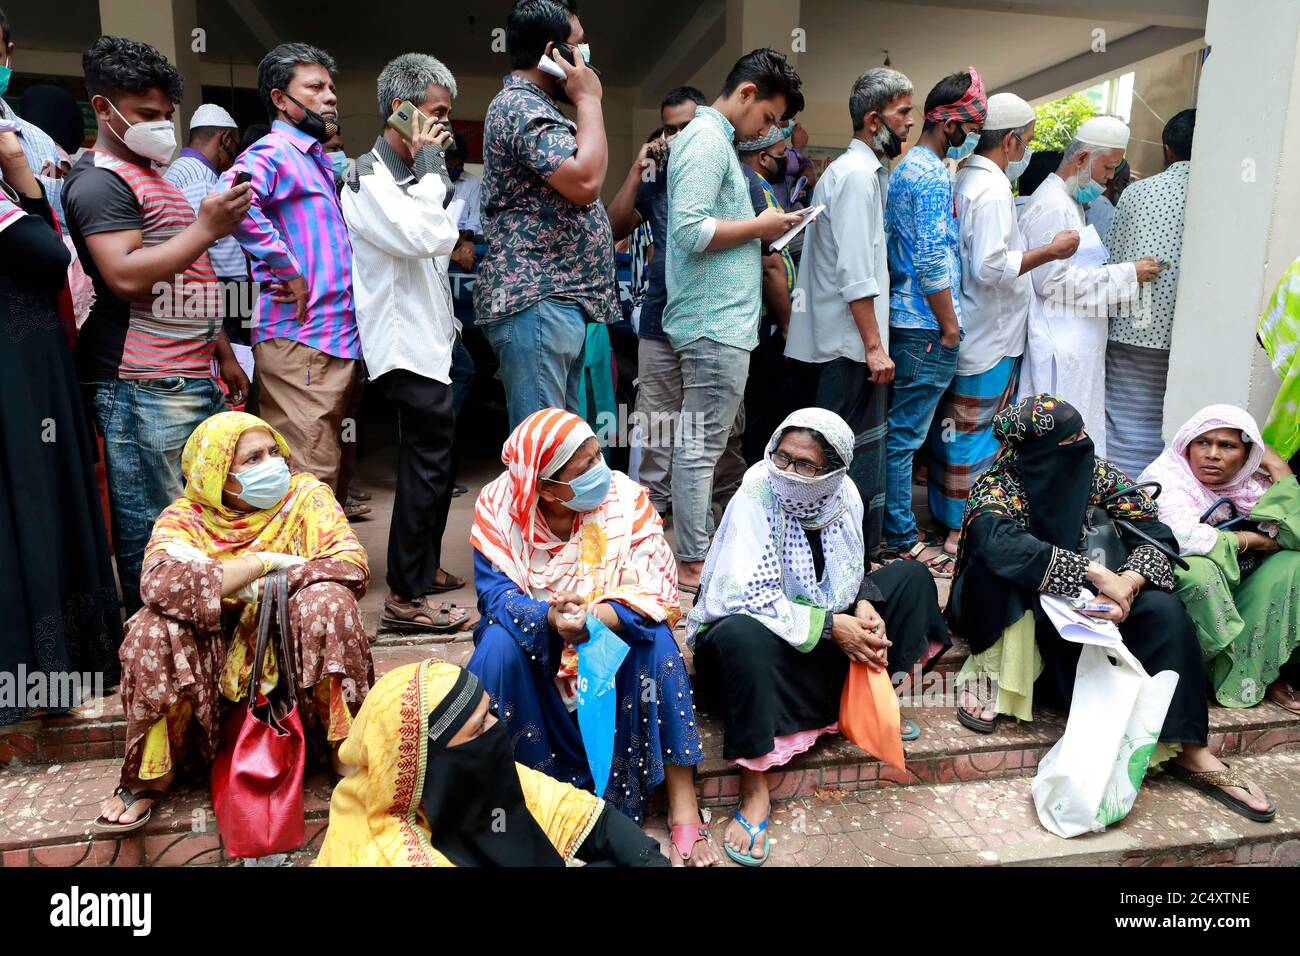 Dhaka, Bangladesch - 29. Juni 2020: Ohne die soziale Distanzierung aufrecht zu erhalten, stehen die Menschen in Schlangen, um ihre Wasserrechnungen im Büro von Jatrabari zu bezahlen Stockfoto